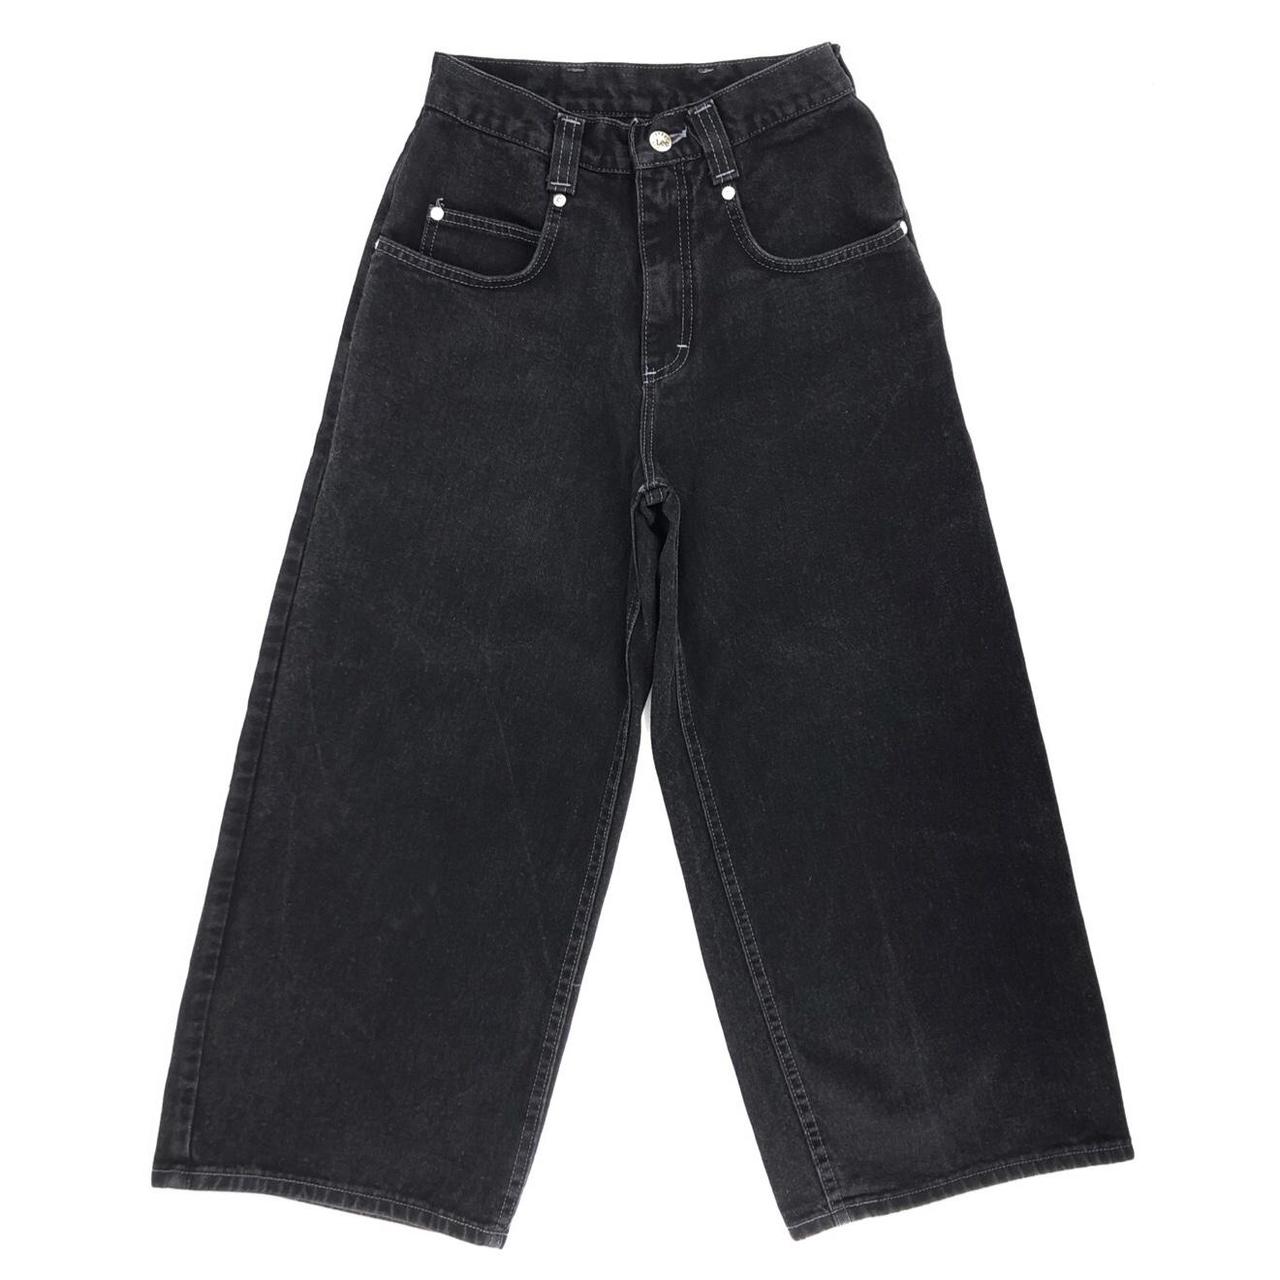 90s Lee Pipes jeans black wide leg 1990s vintage... - Depop